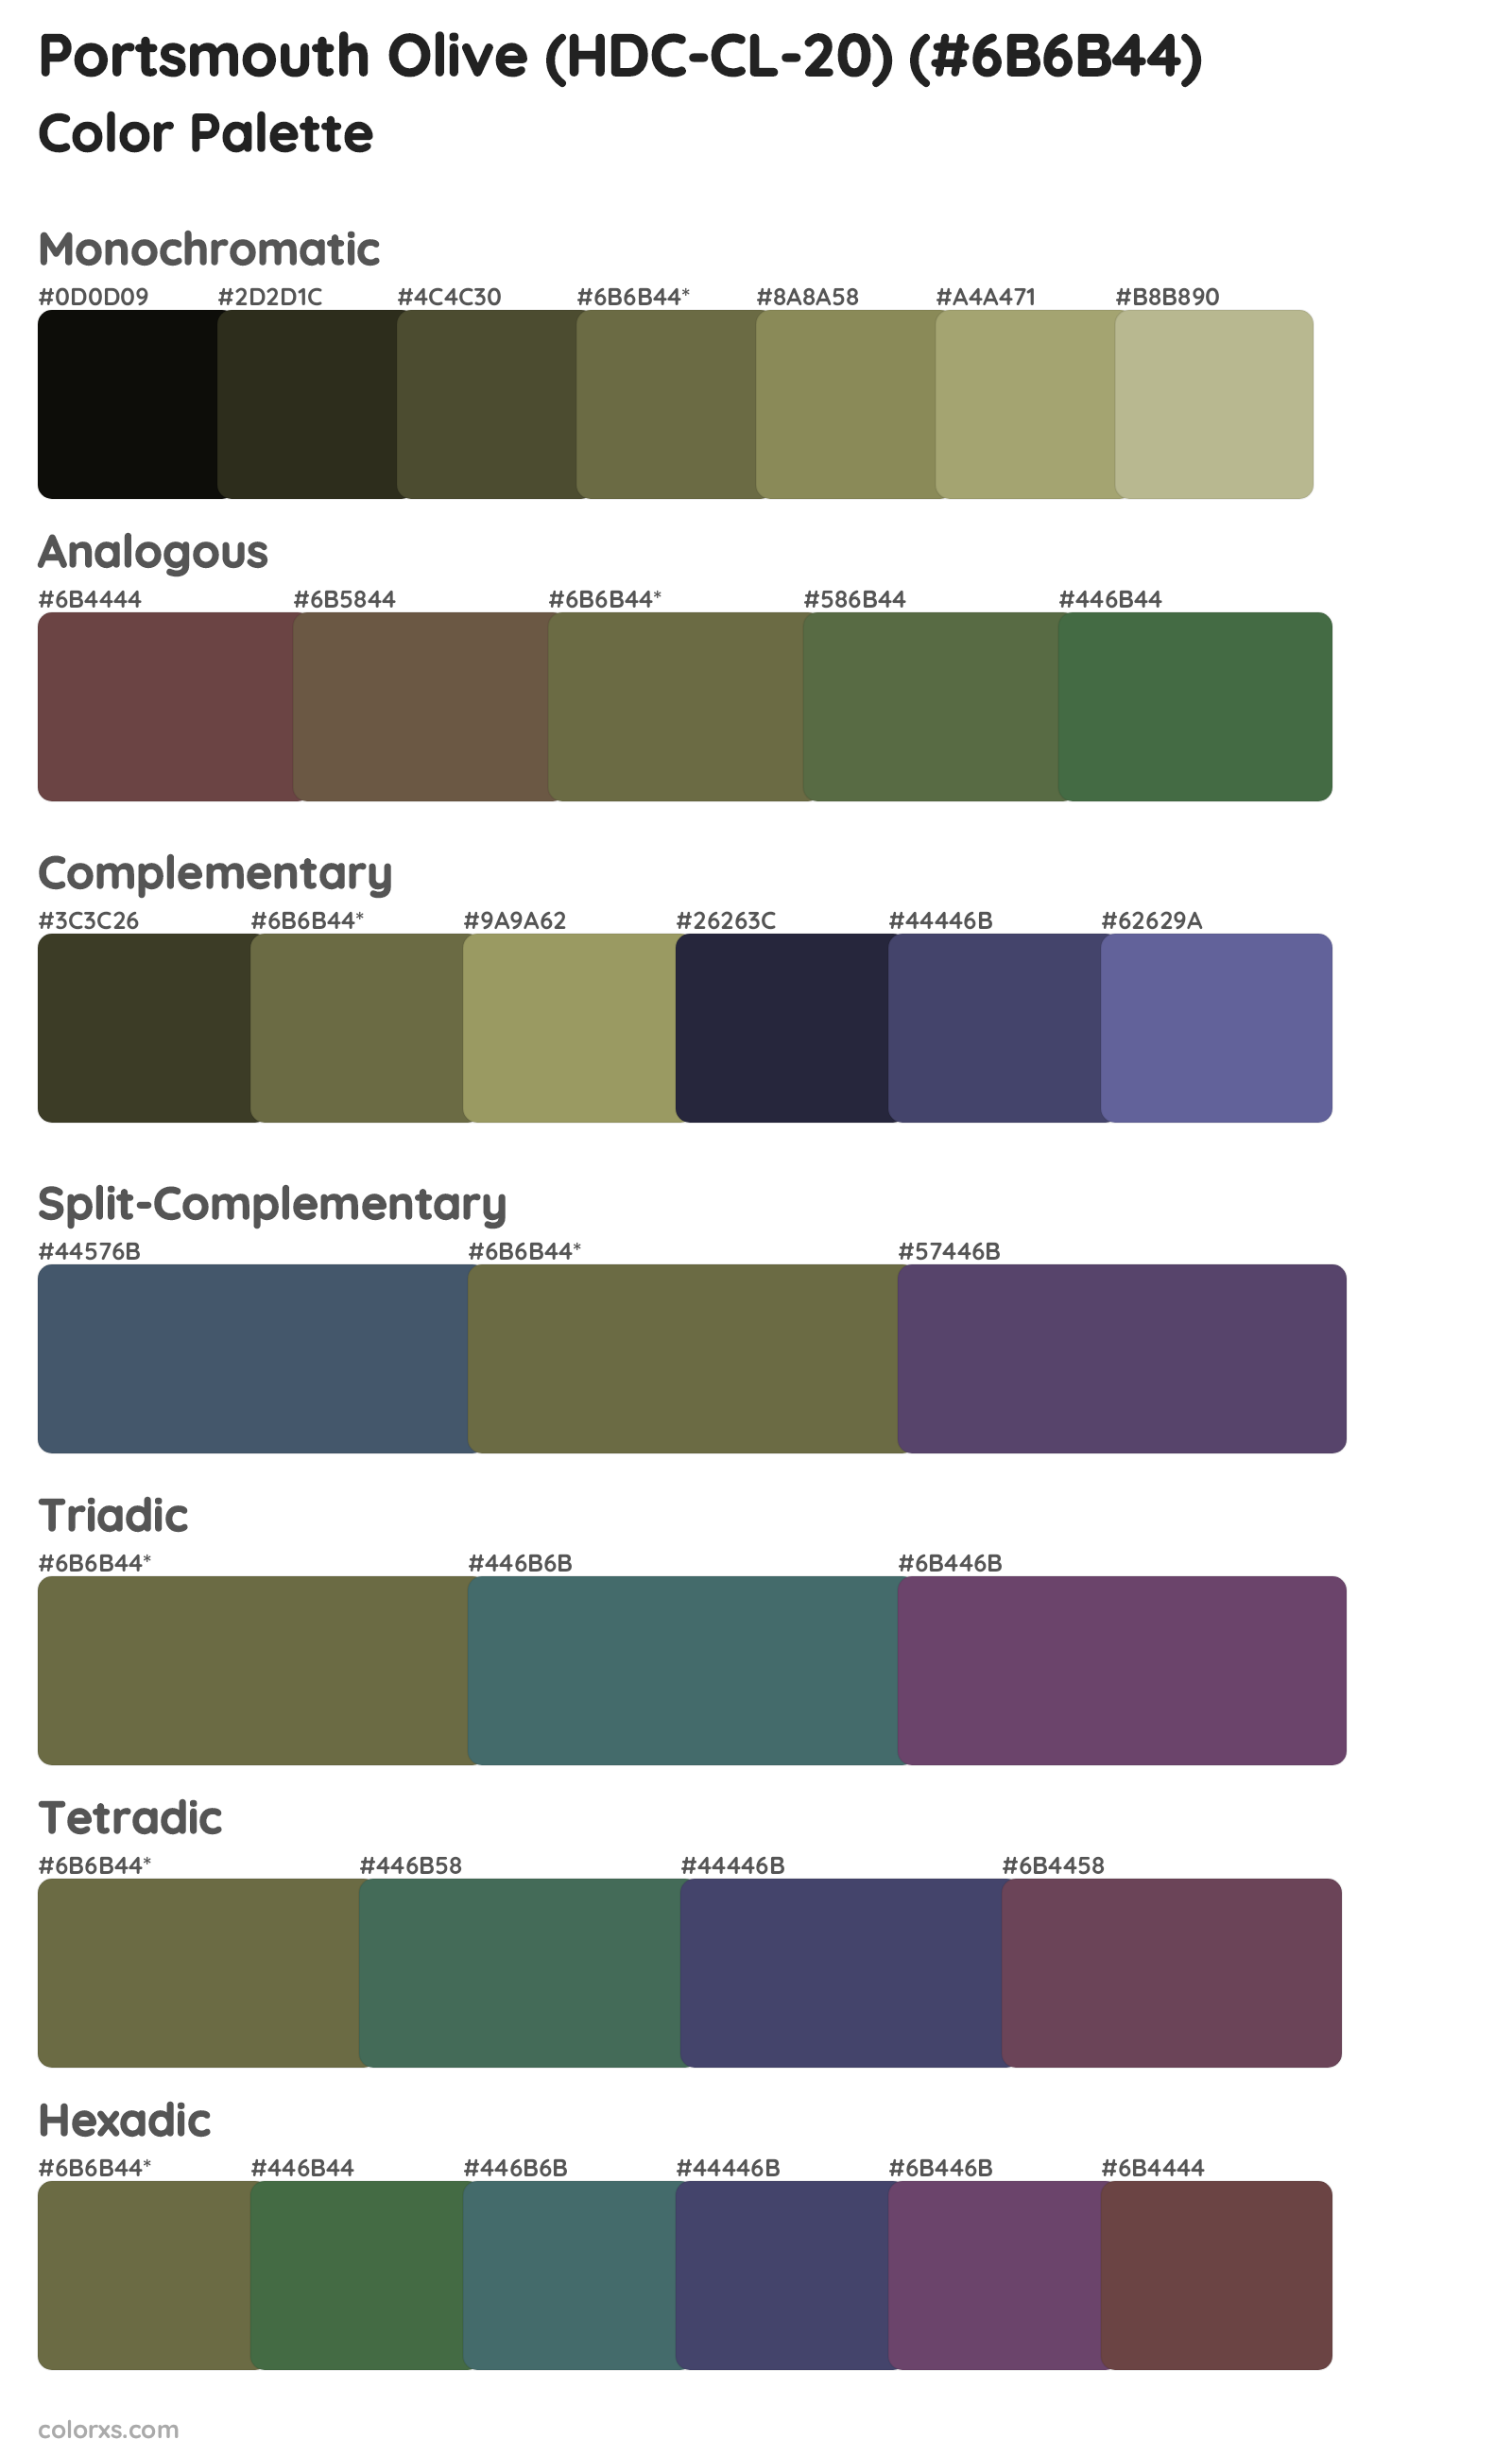 Portsmouth Olive (HDC-CL-20) Color Scheme Palettes